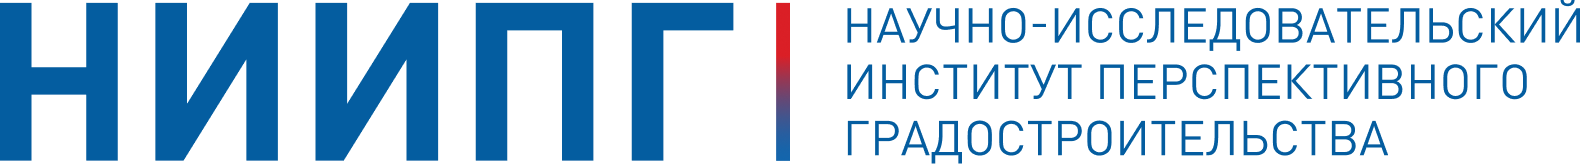 Логотип НИИПГ